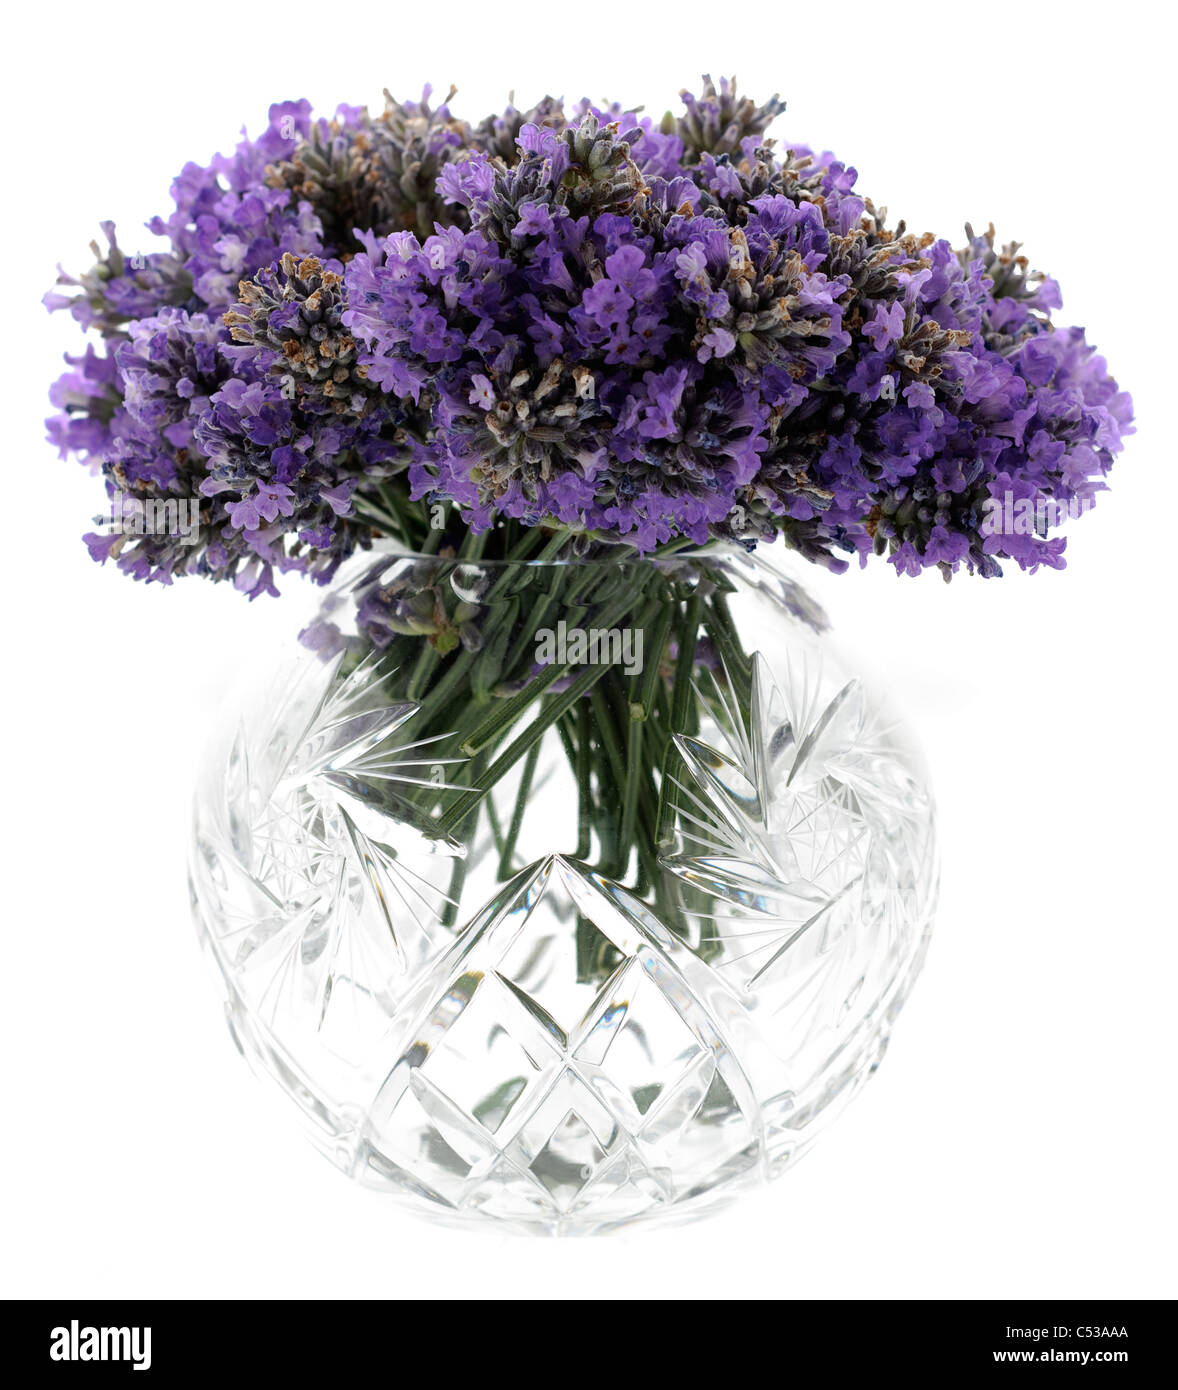 Des fleurs de lavande dans un récipient en verre coupe circulaire Banque D'Images